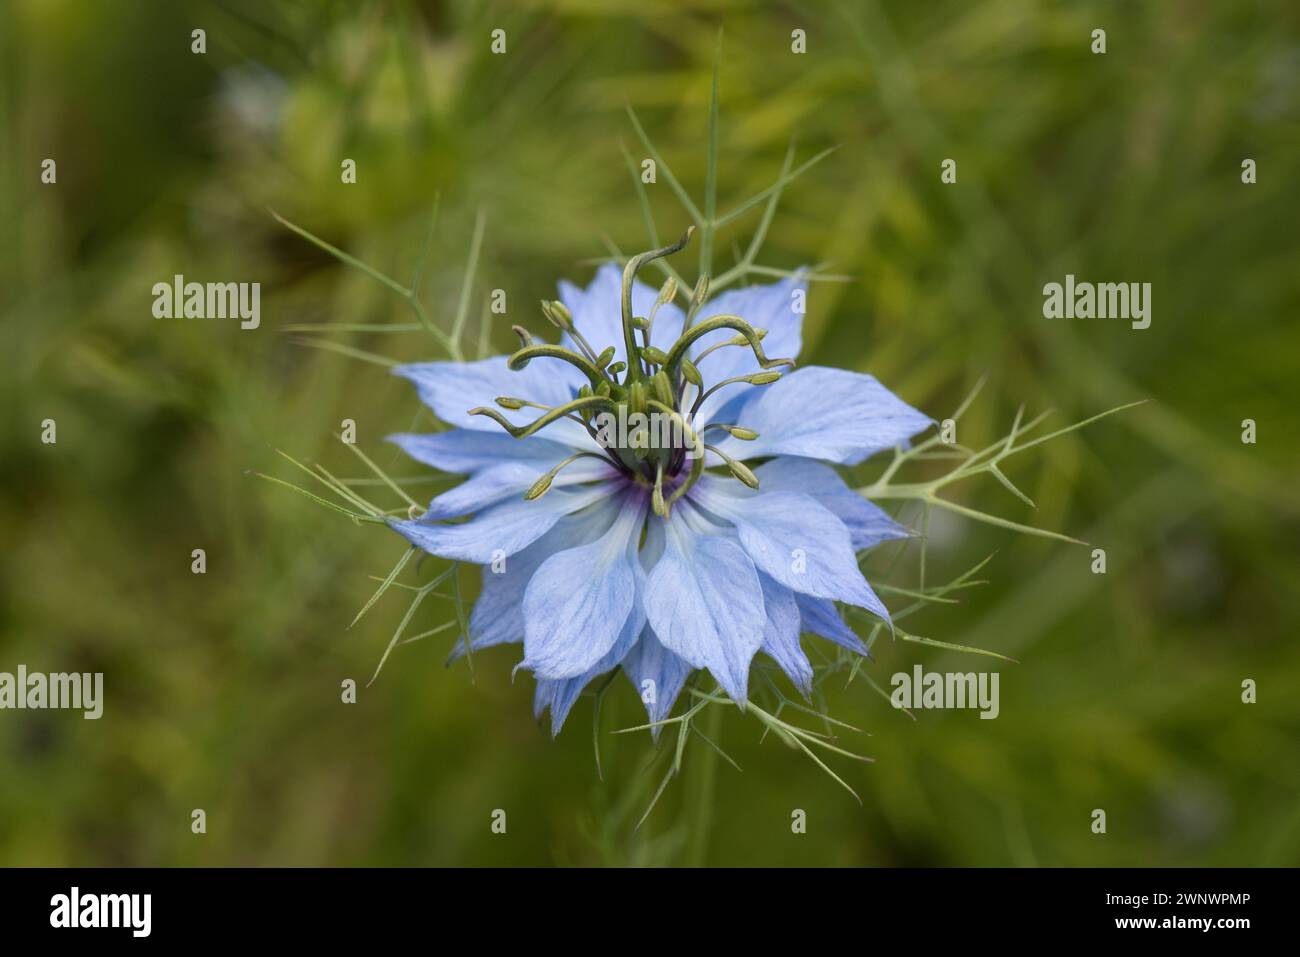 Liebe im Nebel (Nigella damascena) Blume blassblaue Sepalen und Blütenblätter an der Basis der Antheren, Pistil mit fünf Stilen und multifiden Involucre. Stockfoto